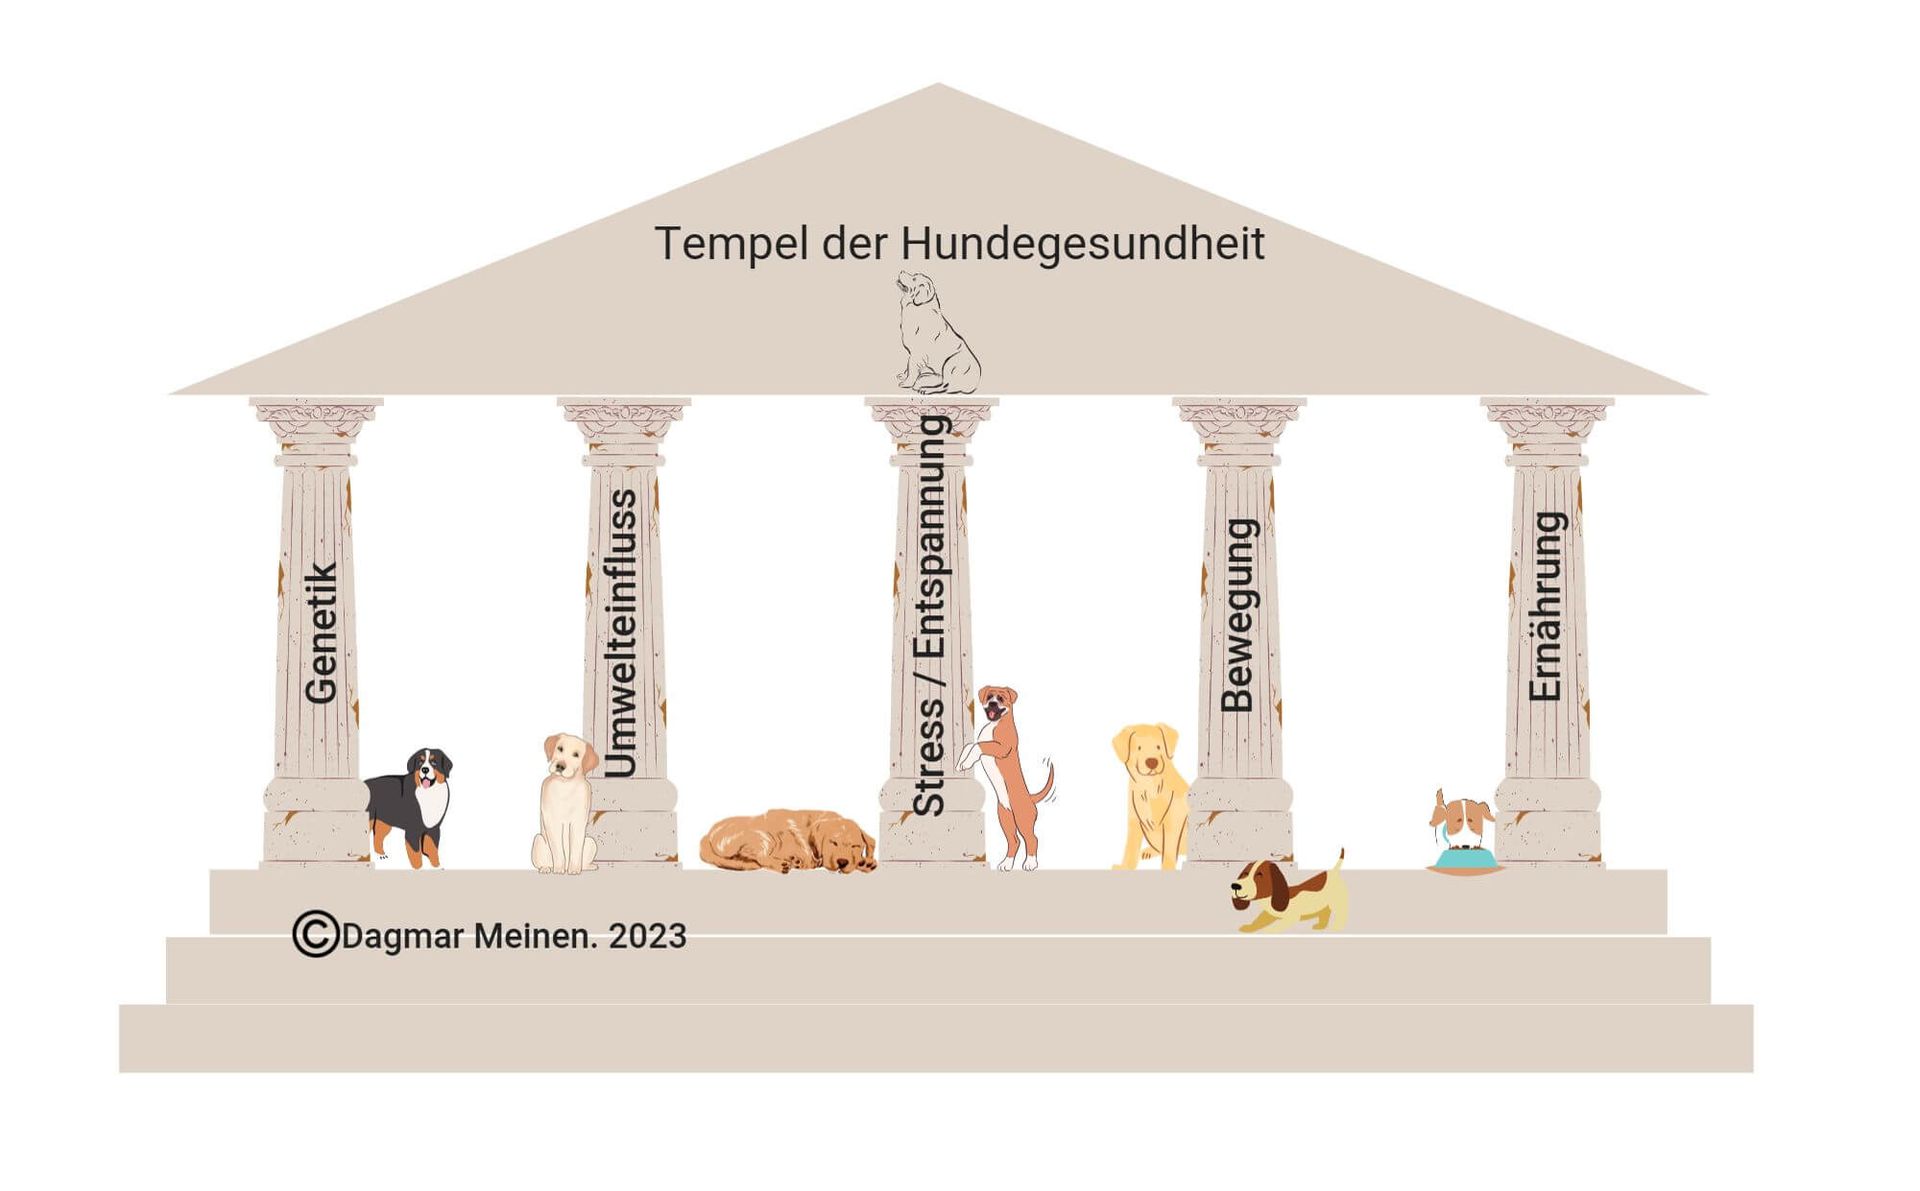 Grafik. Der Tempel der Hundegesundheit. Copyright Dagmar Meinen 2023